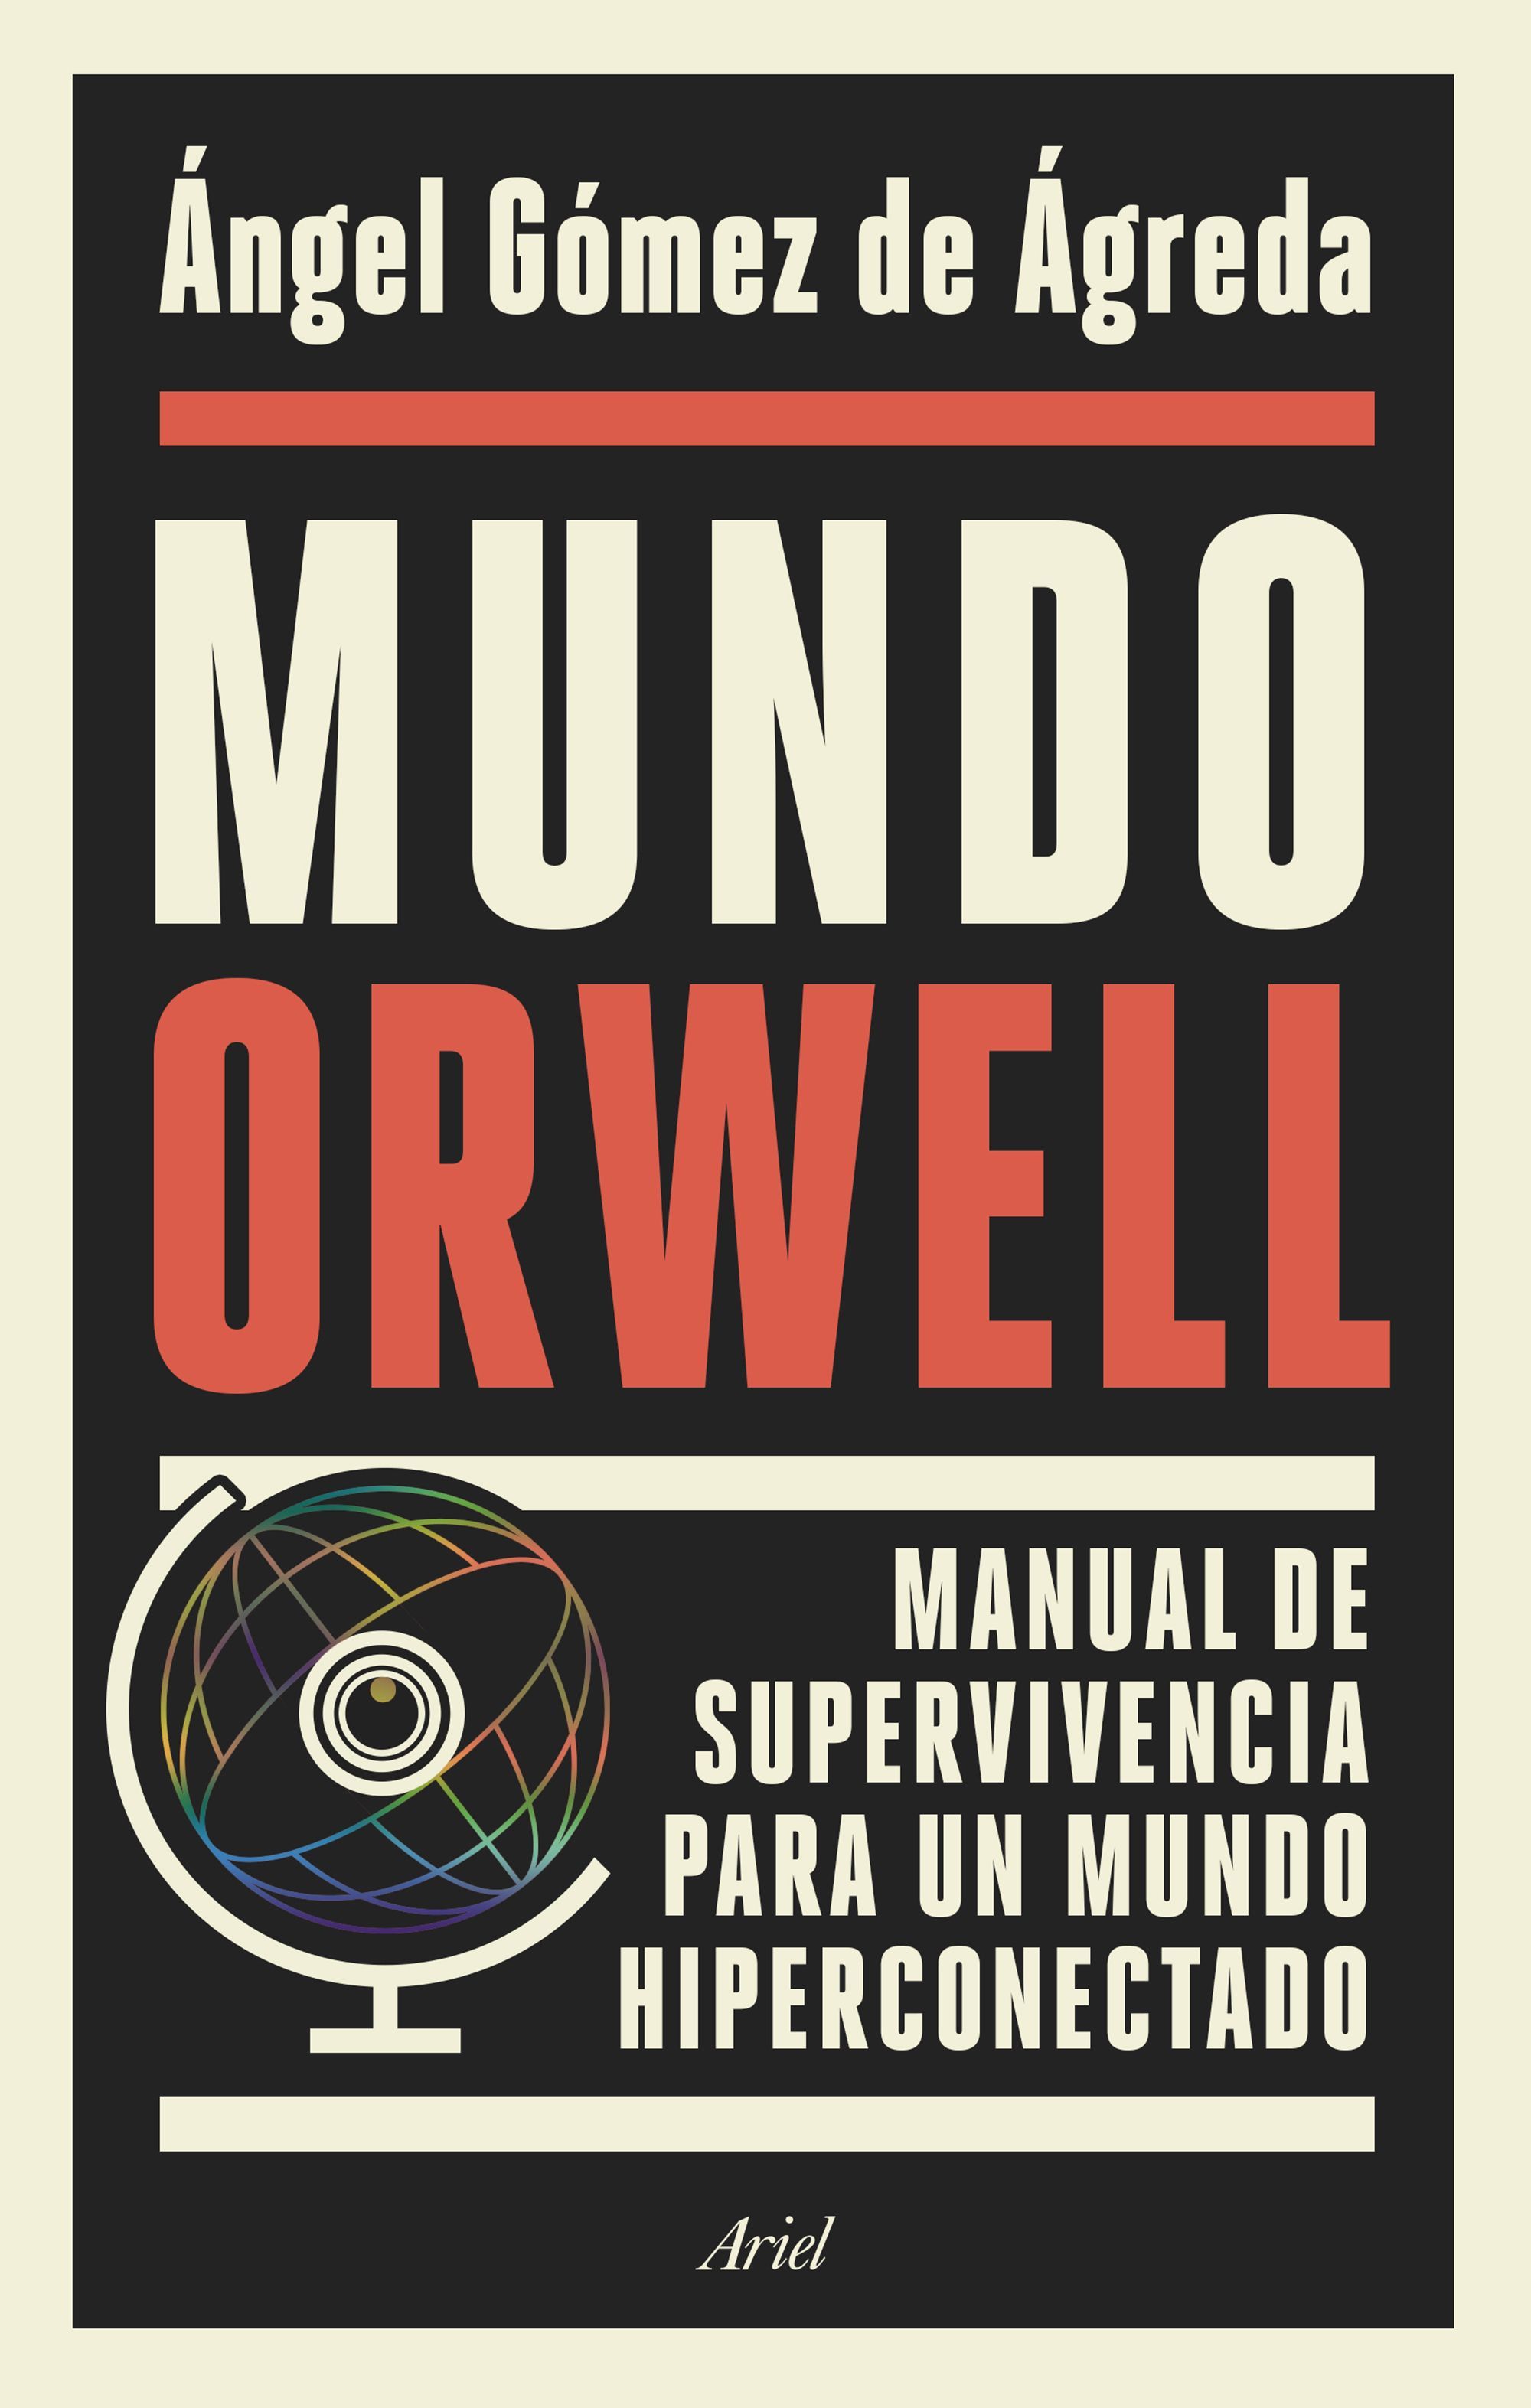 Un manual de supervivencia para un mundo hiperconectado (Ed. Ariel)